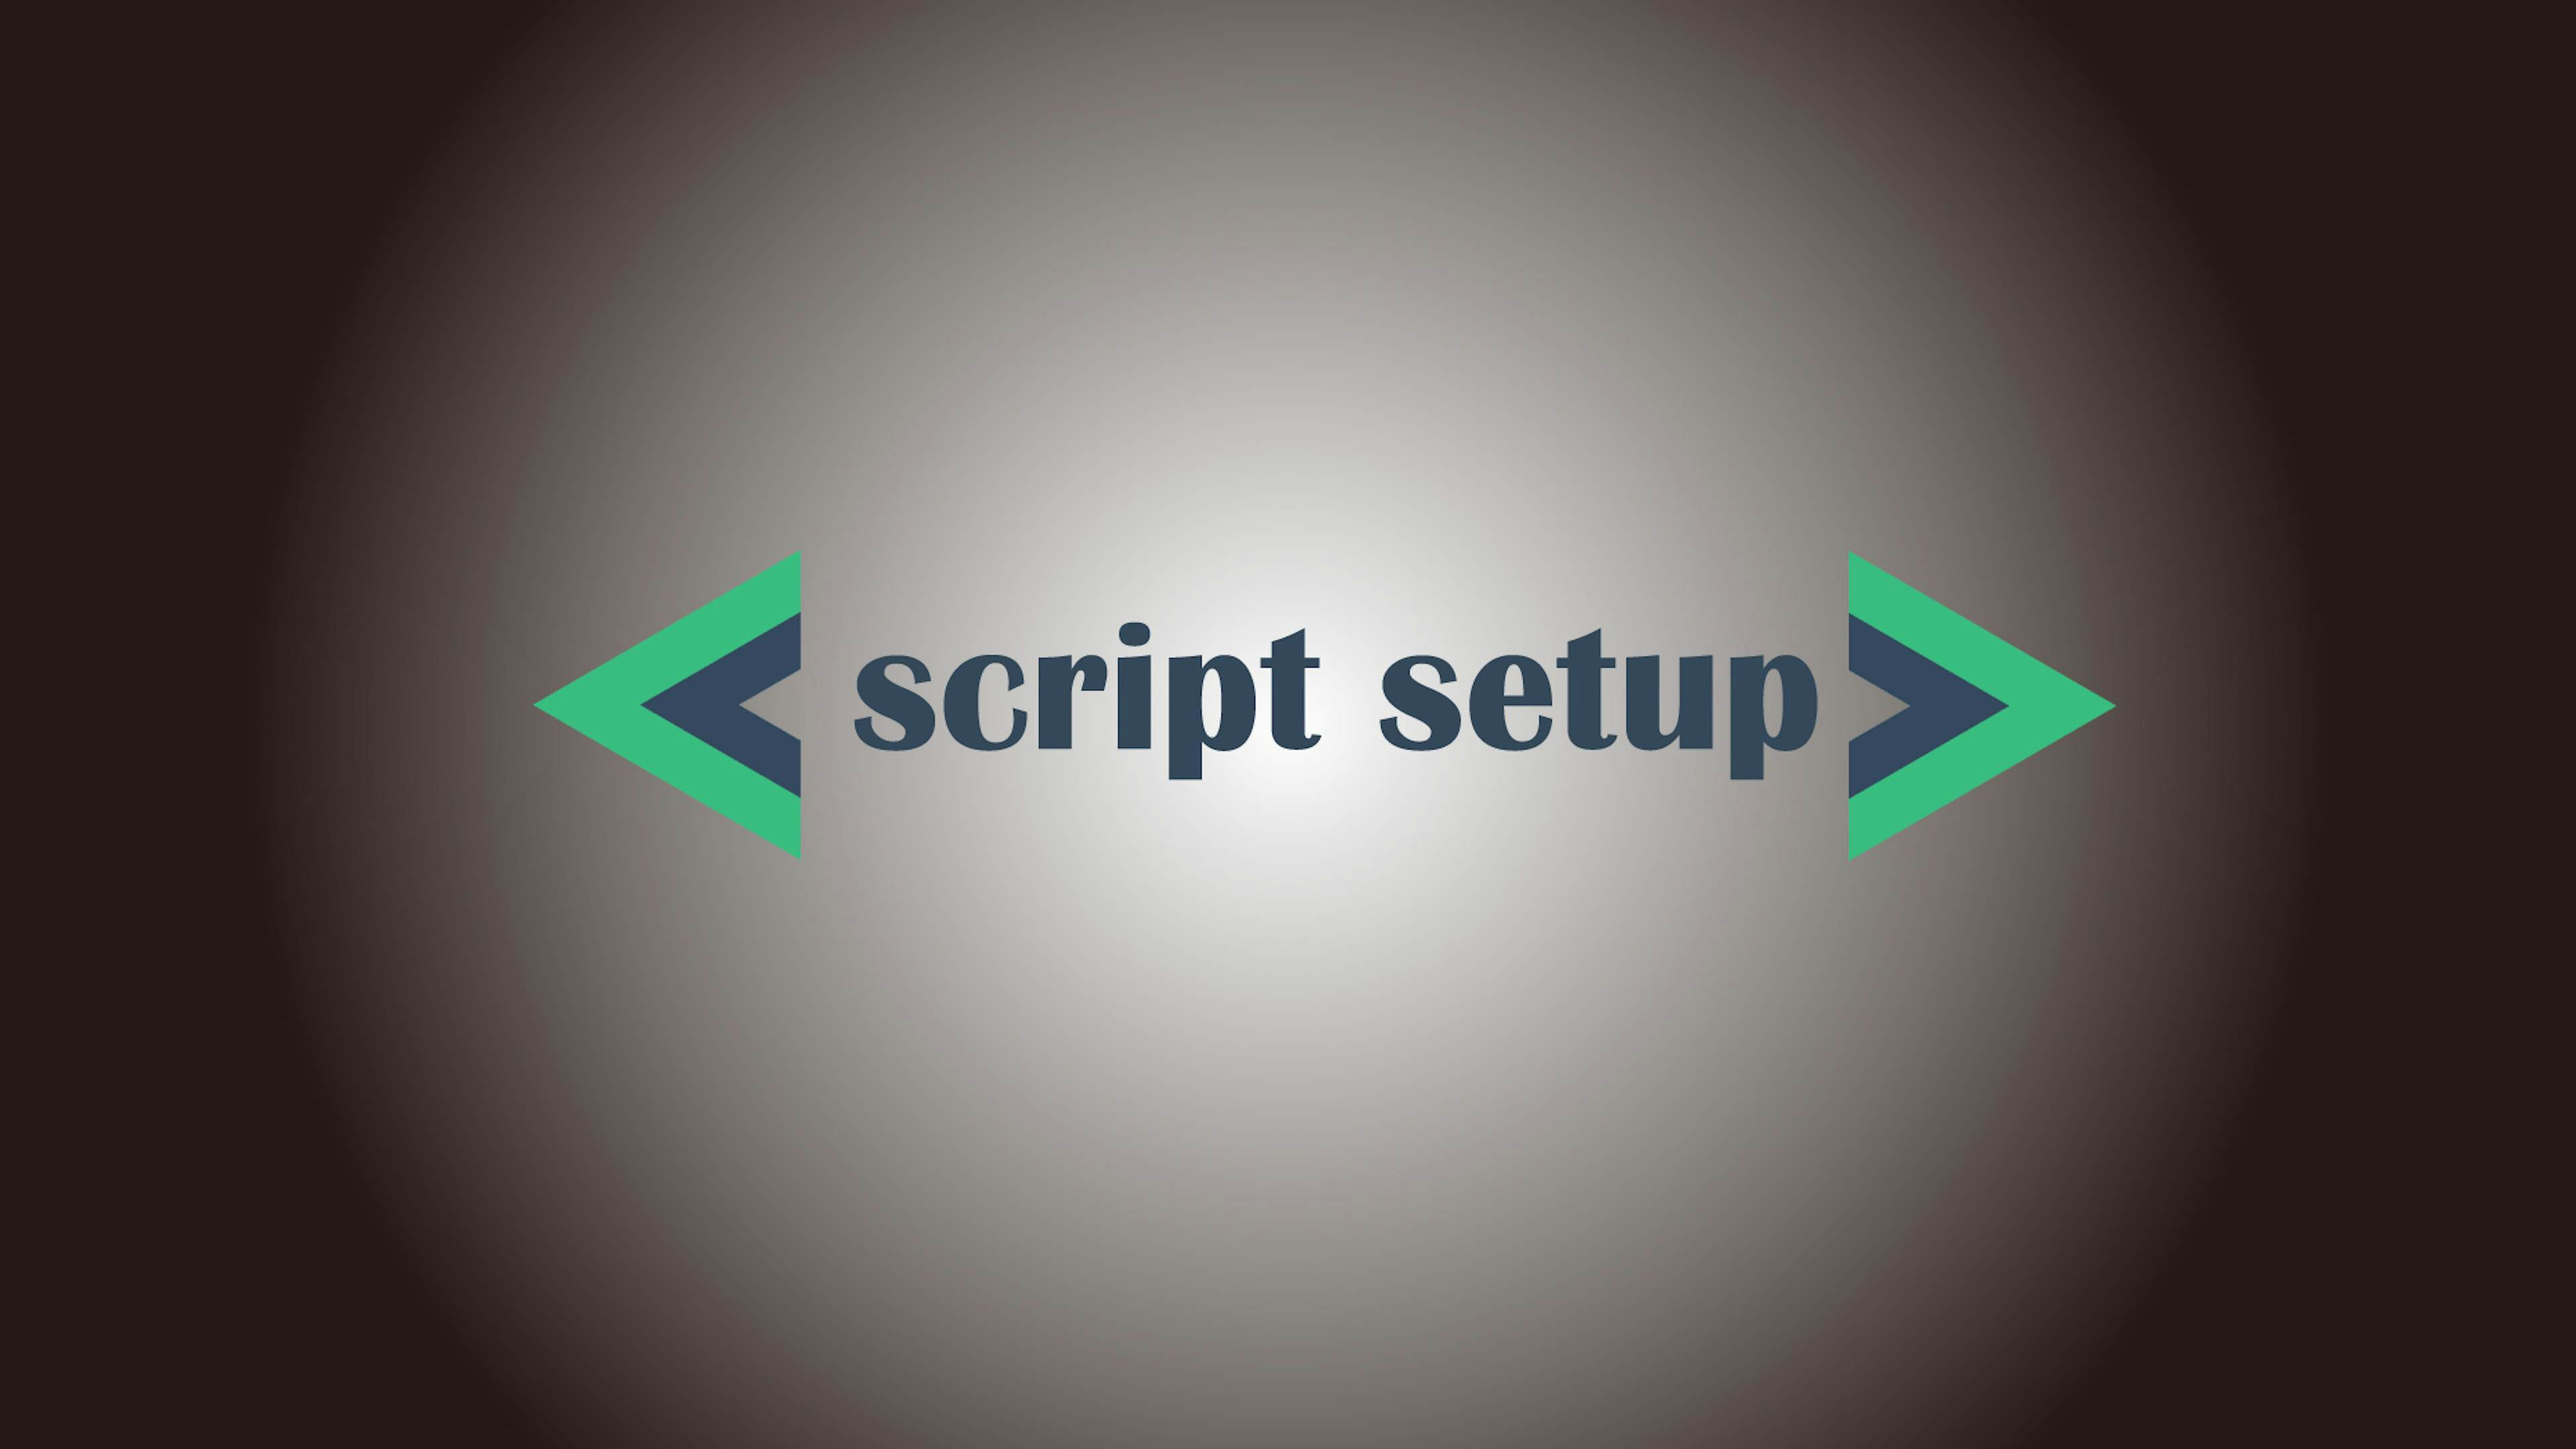 【Vue3】script setup構文の使用方法とメリット【propsとemitsも解説】